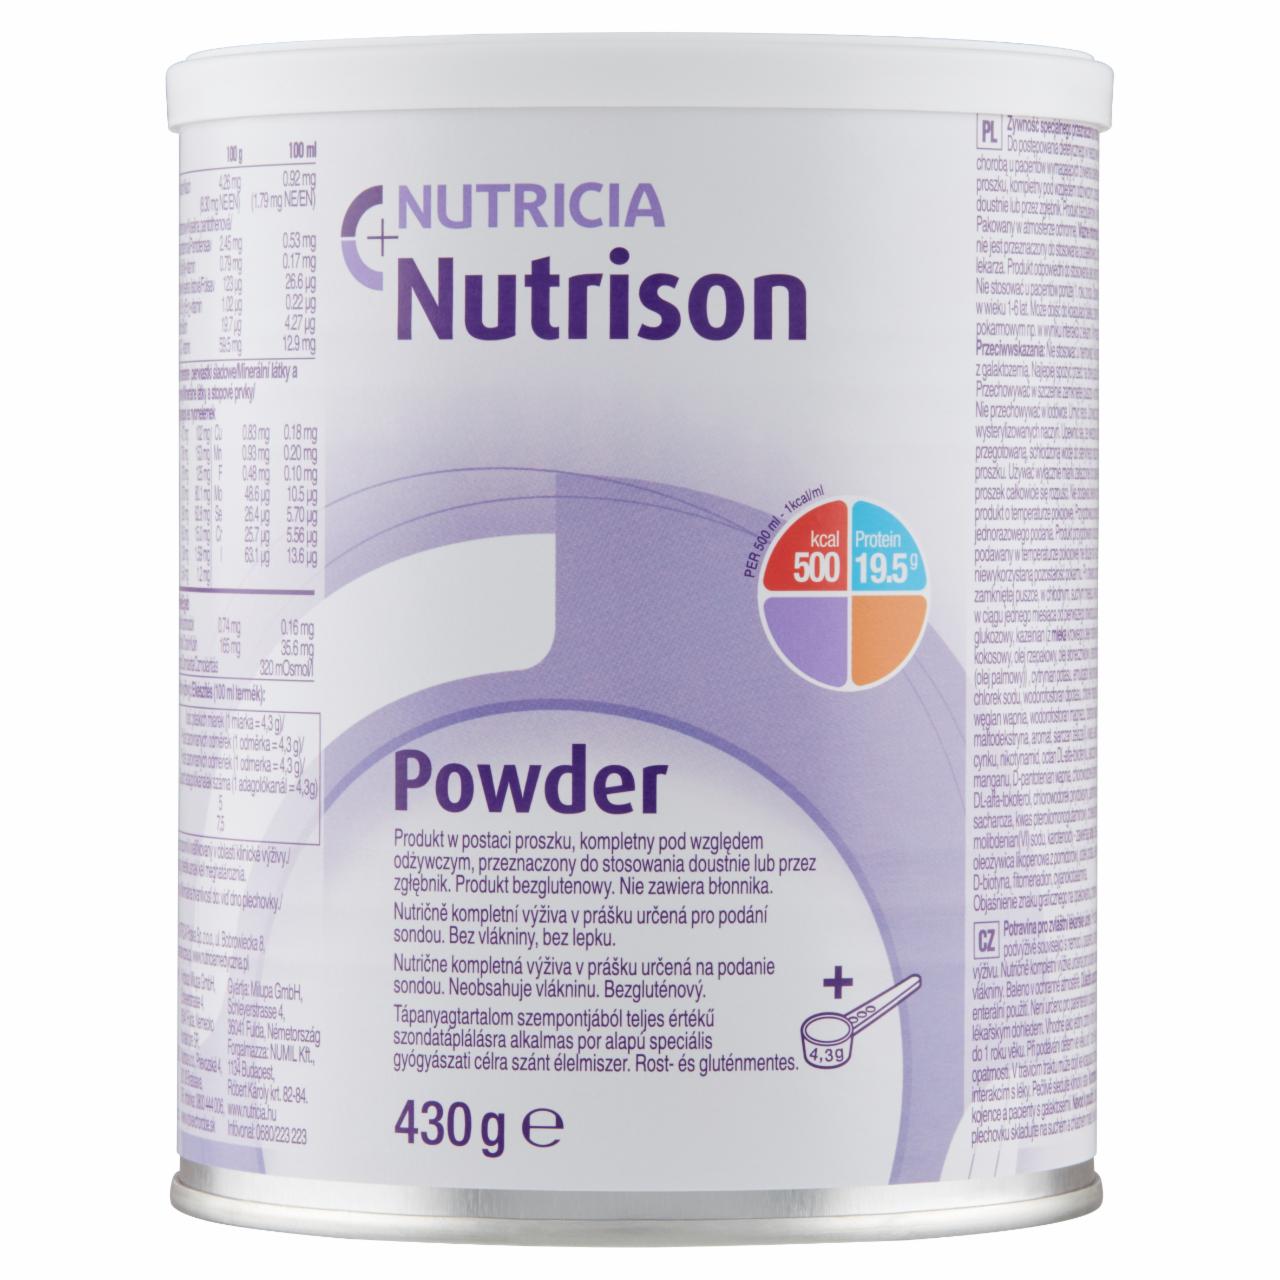 Képek - Nutricia Nutrison Powder speciális gyógyászati célra szánt élelmiszer 1 éves kortól 430 g